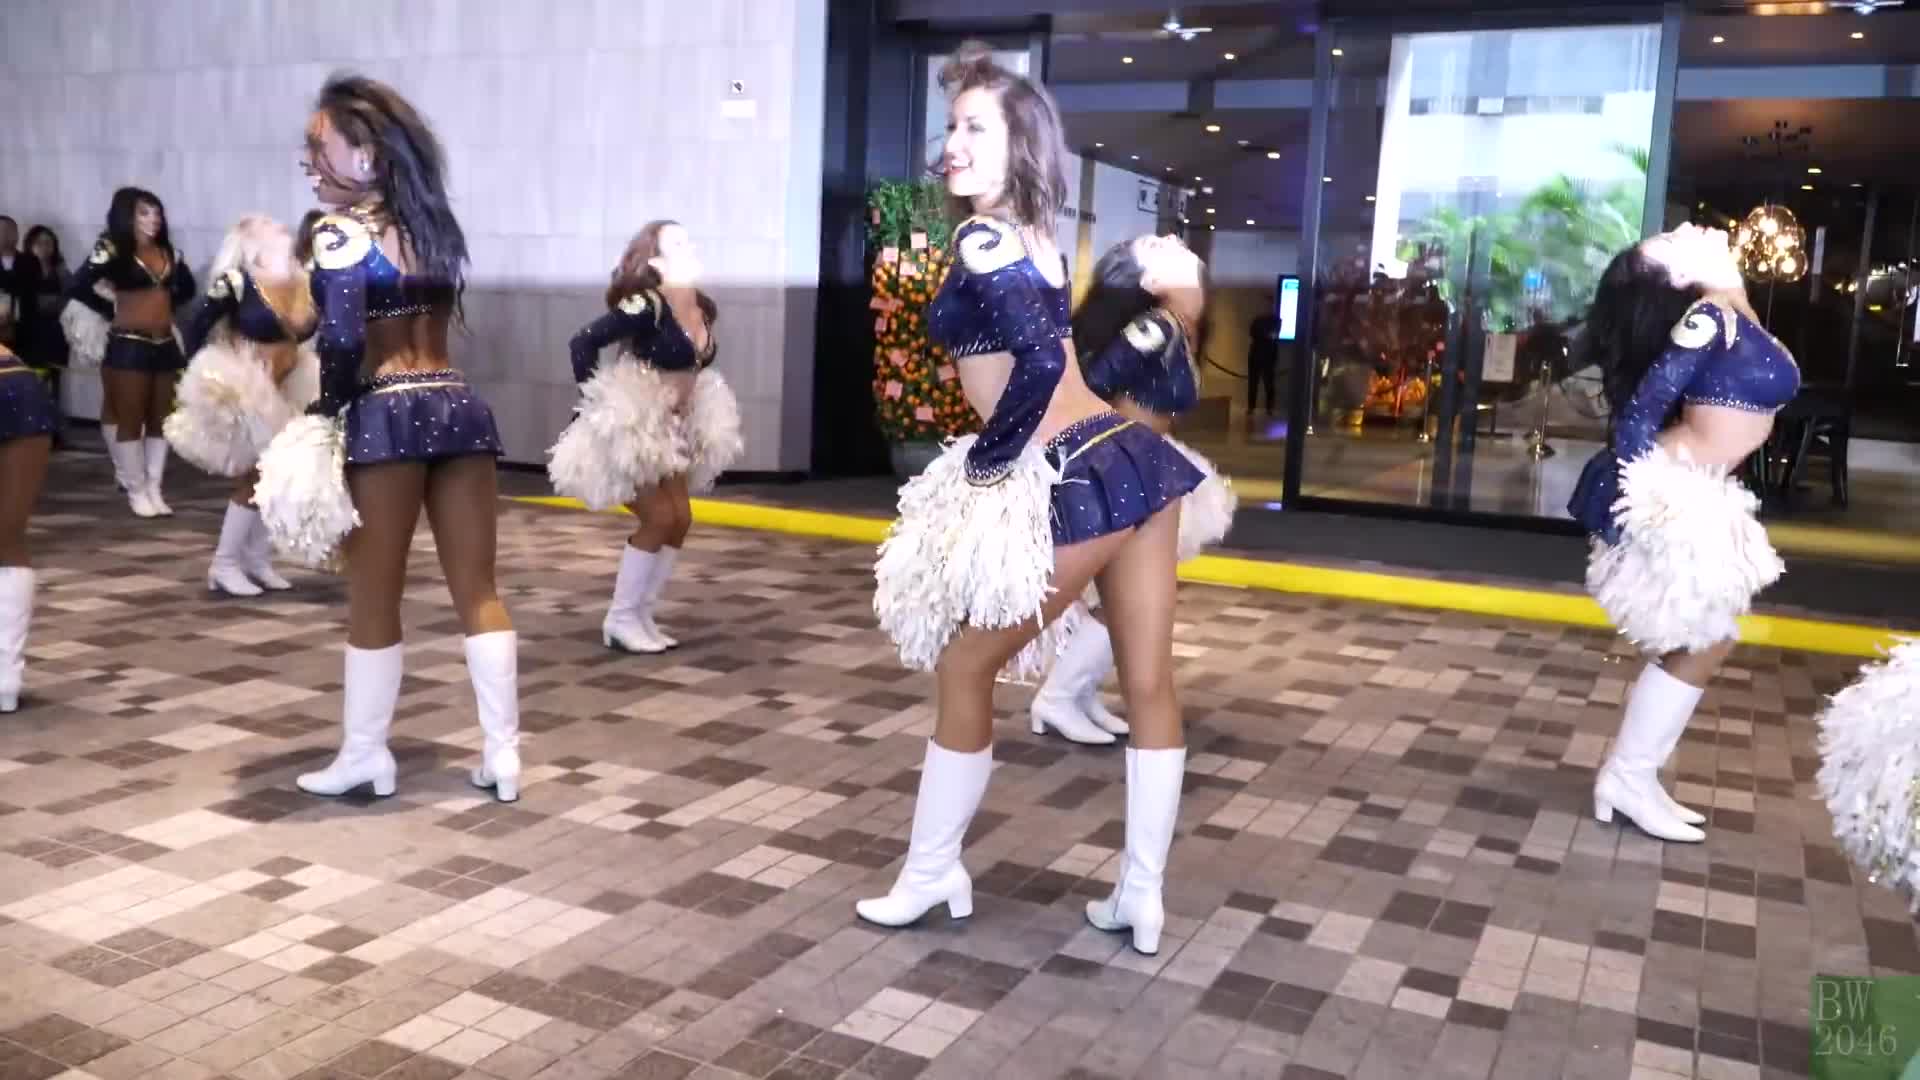 Los Angeles Rams Cheerleader – Performance 2 @ Pentahotel Hong Kong, Kowloon